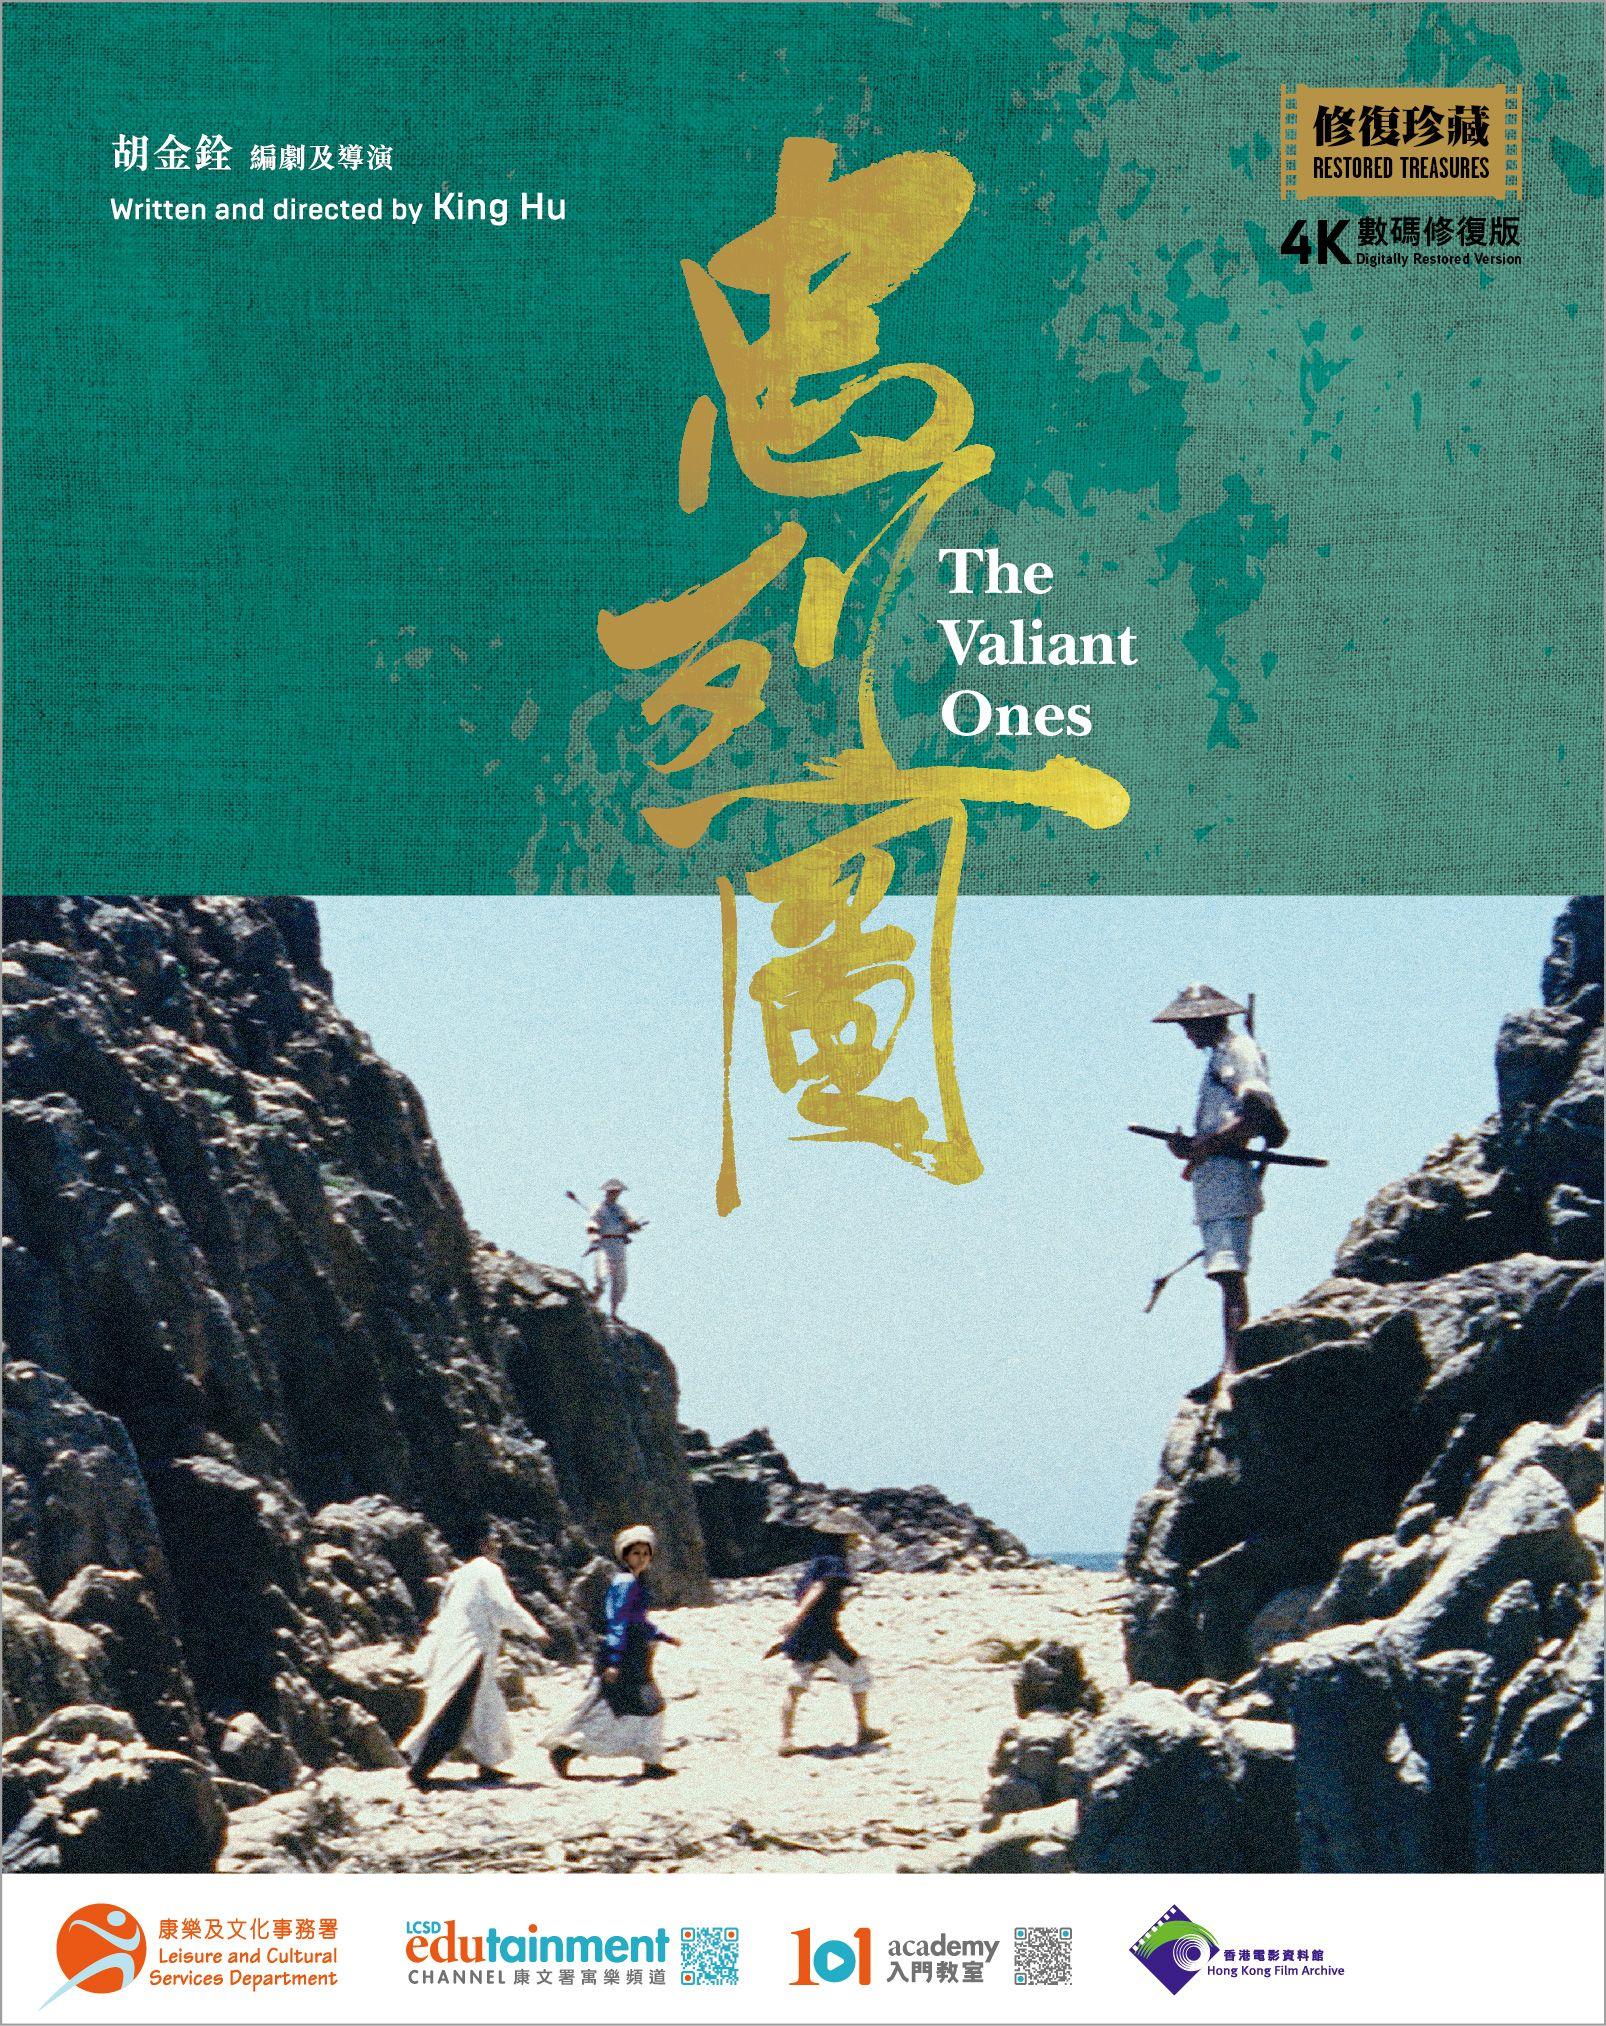 康乐及文化事务署香港电影资料馆的馆藏电影《忠烈图》（1975）4K数码修复版蓝光影碟现已公开发售。《忠烈图》由身兼导演、编剧及出品人的胡金铨拍摄，徐枫、白鹰和乔宏主演。图为影碟封面。